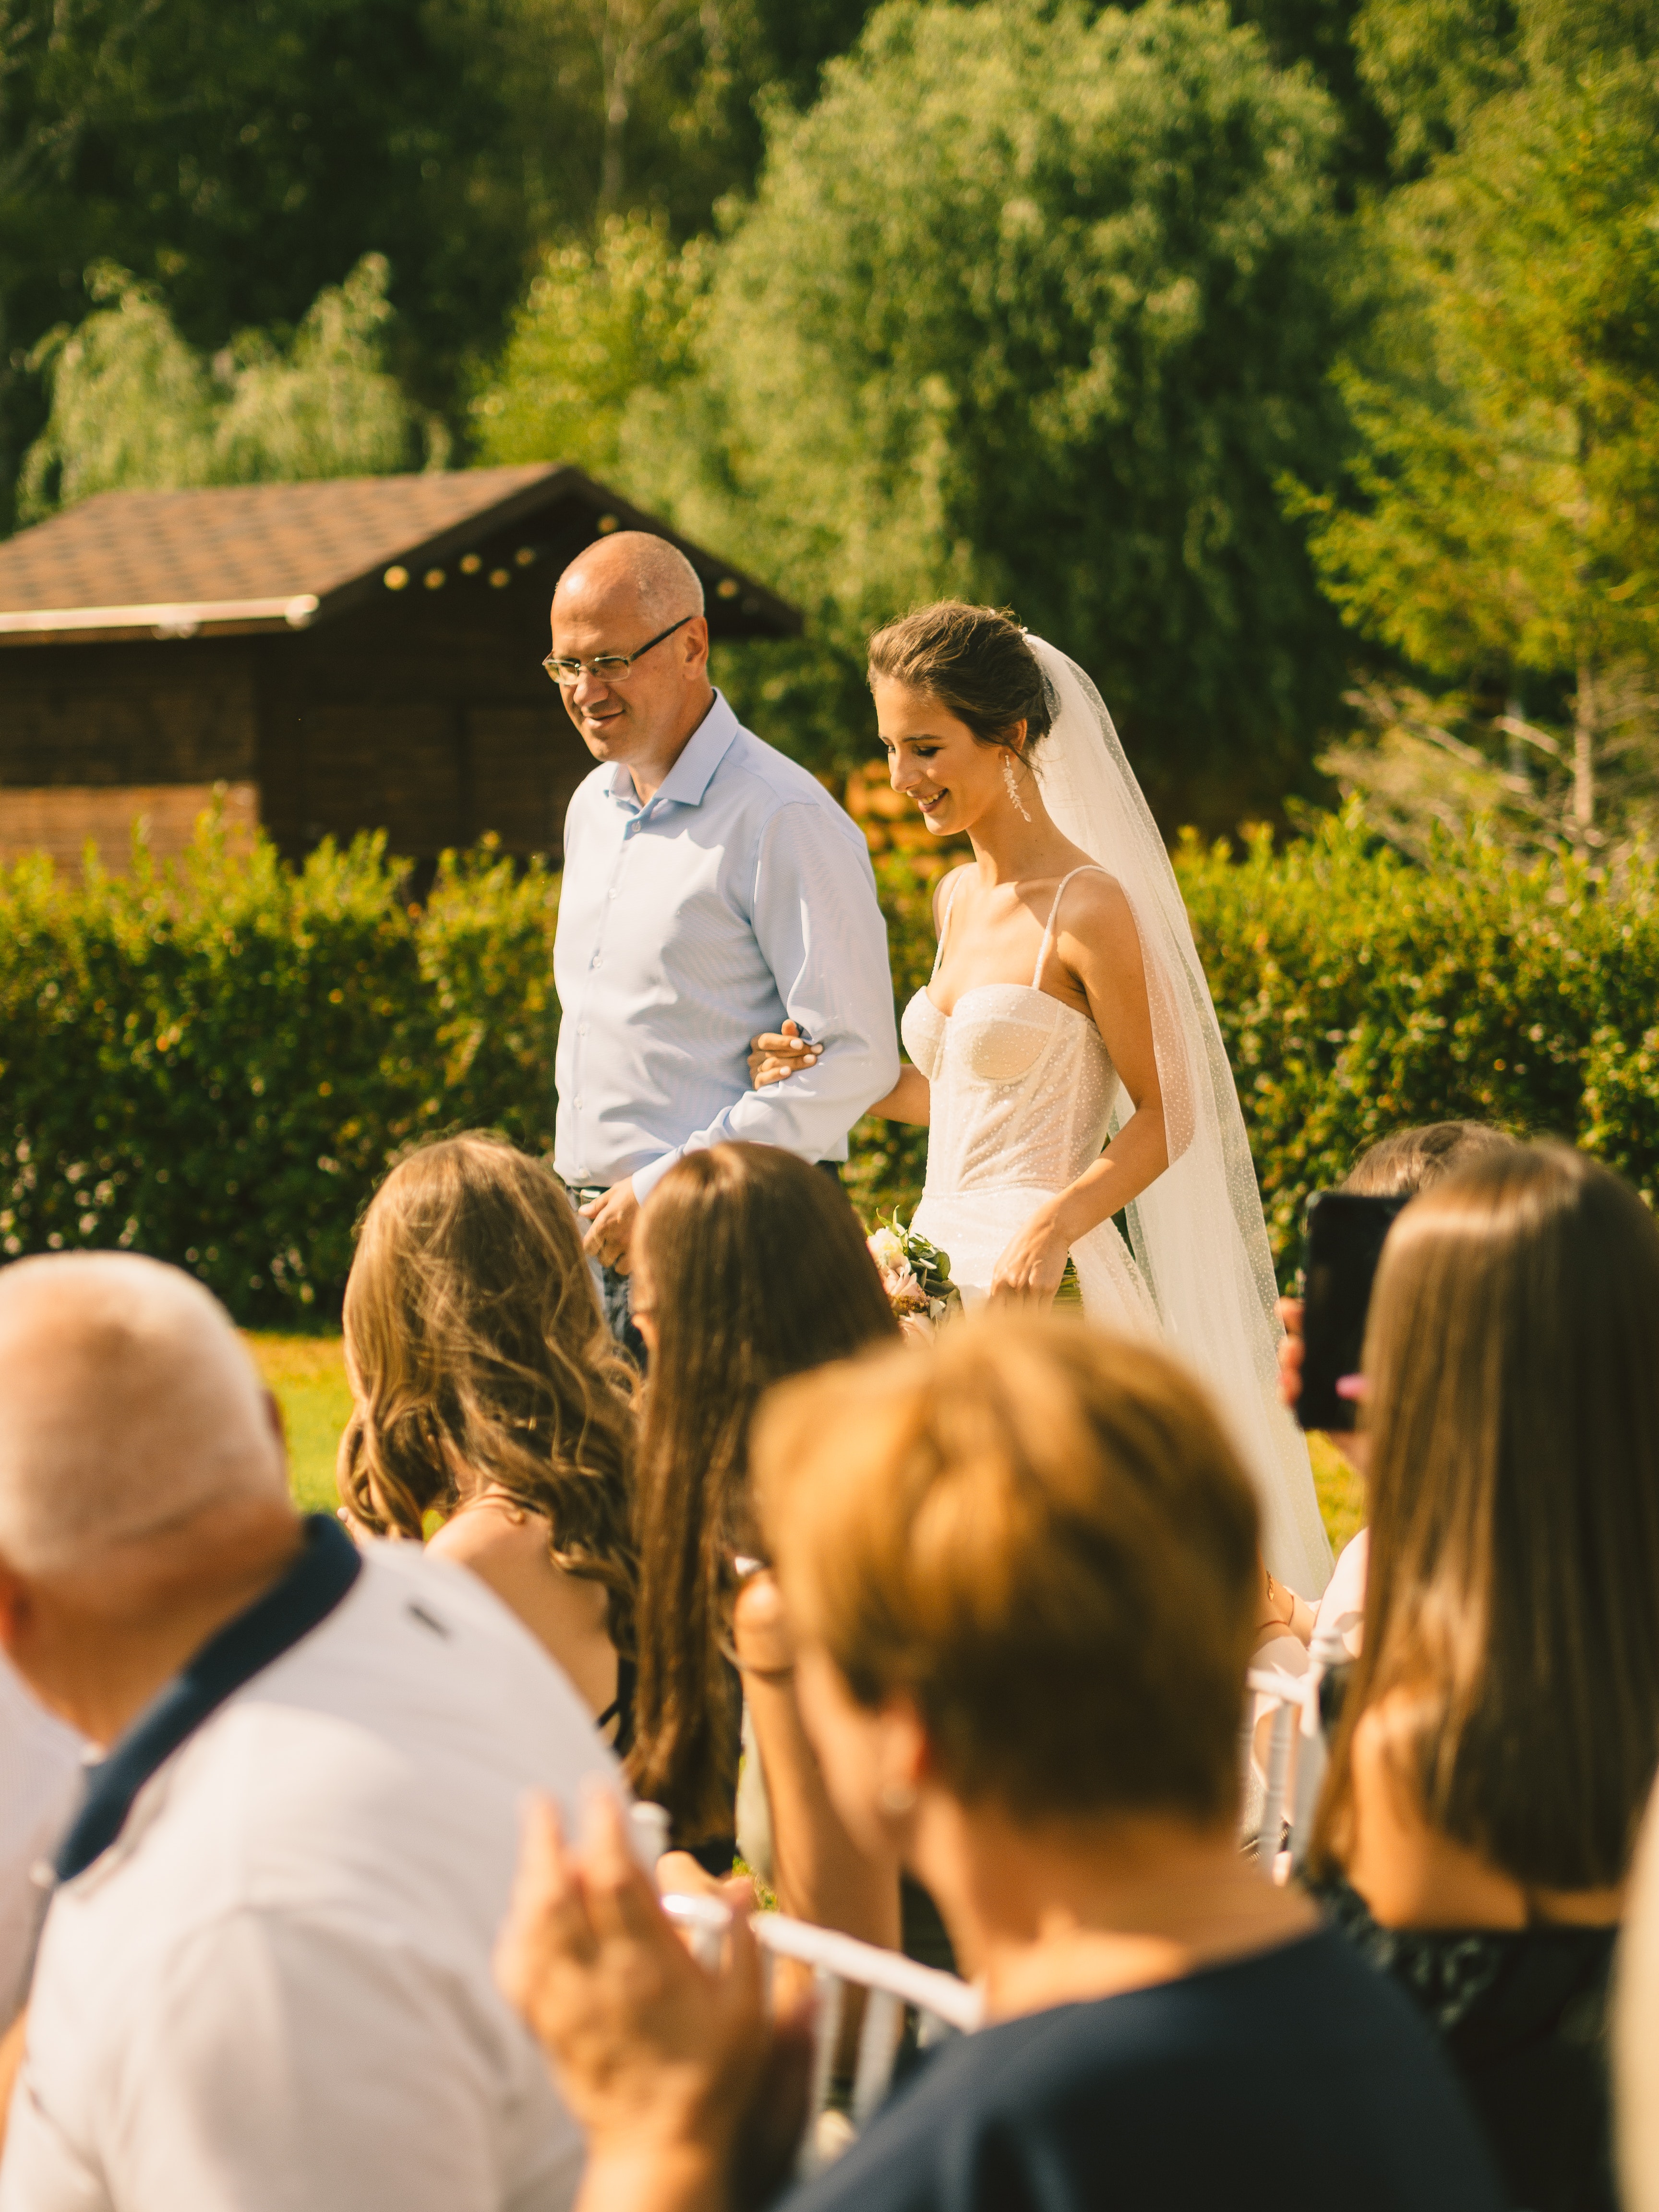 Padre paseando a su hija el día de su boda | Fuente: Pexels